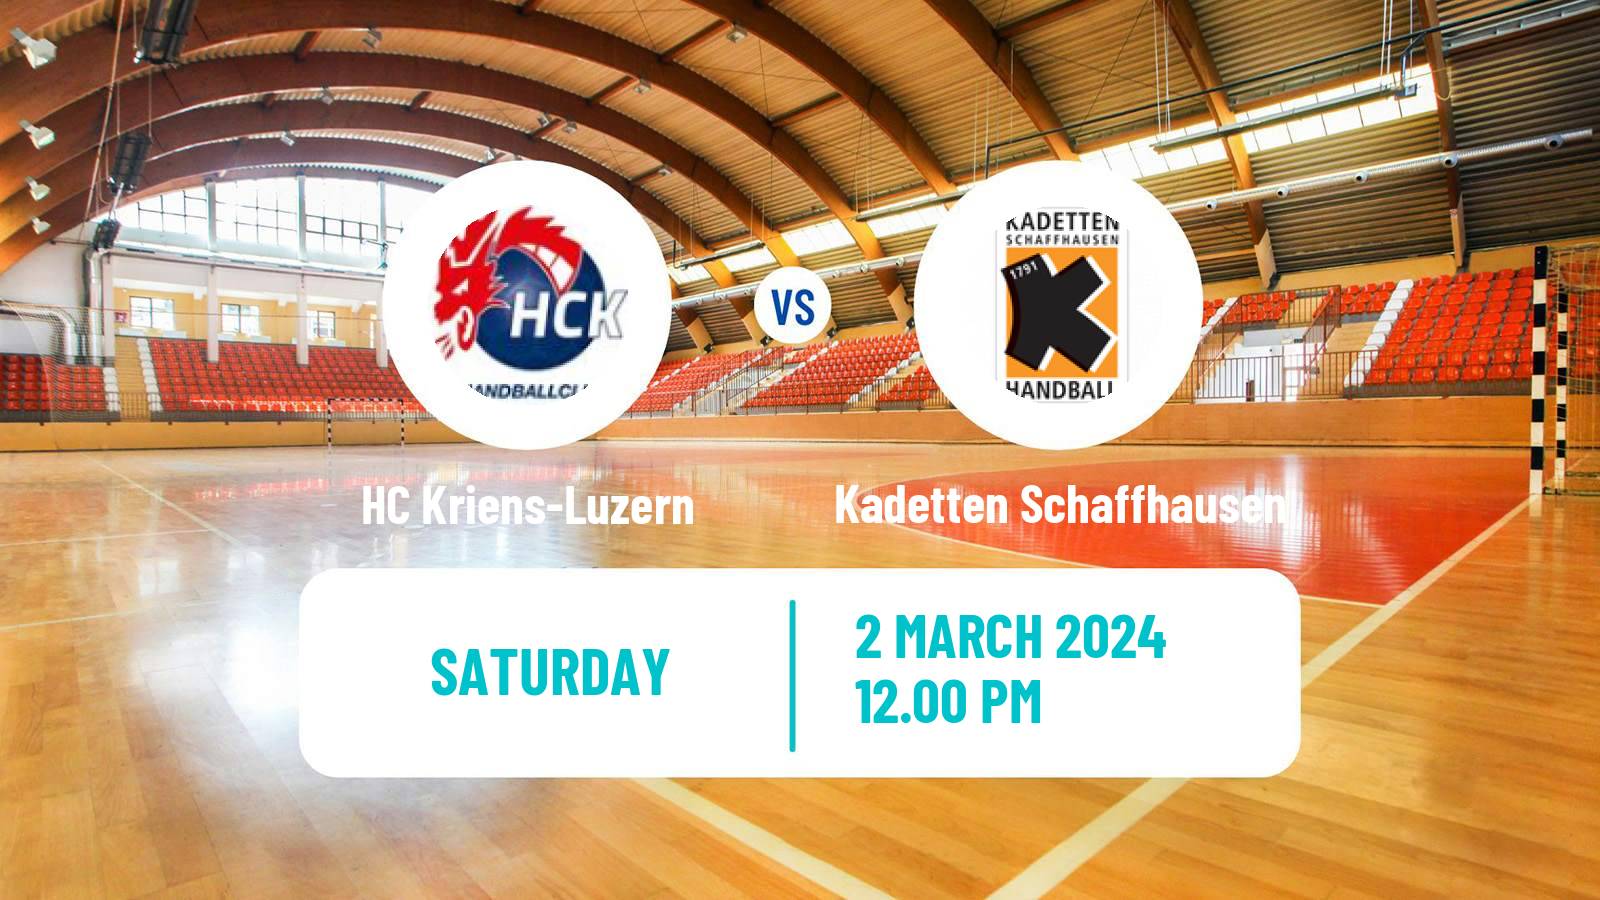 Handball Swiss NLA Handball HC Kriens-Luzern - Kadetten Schaffhausen